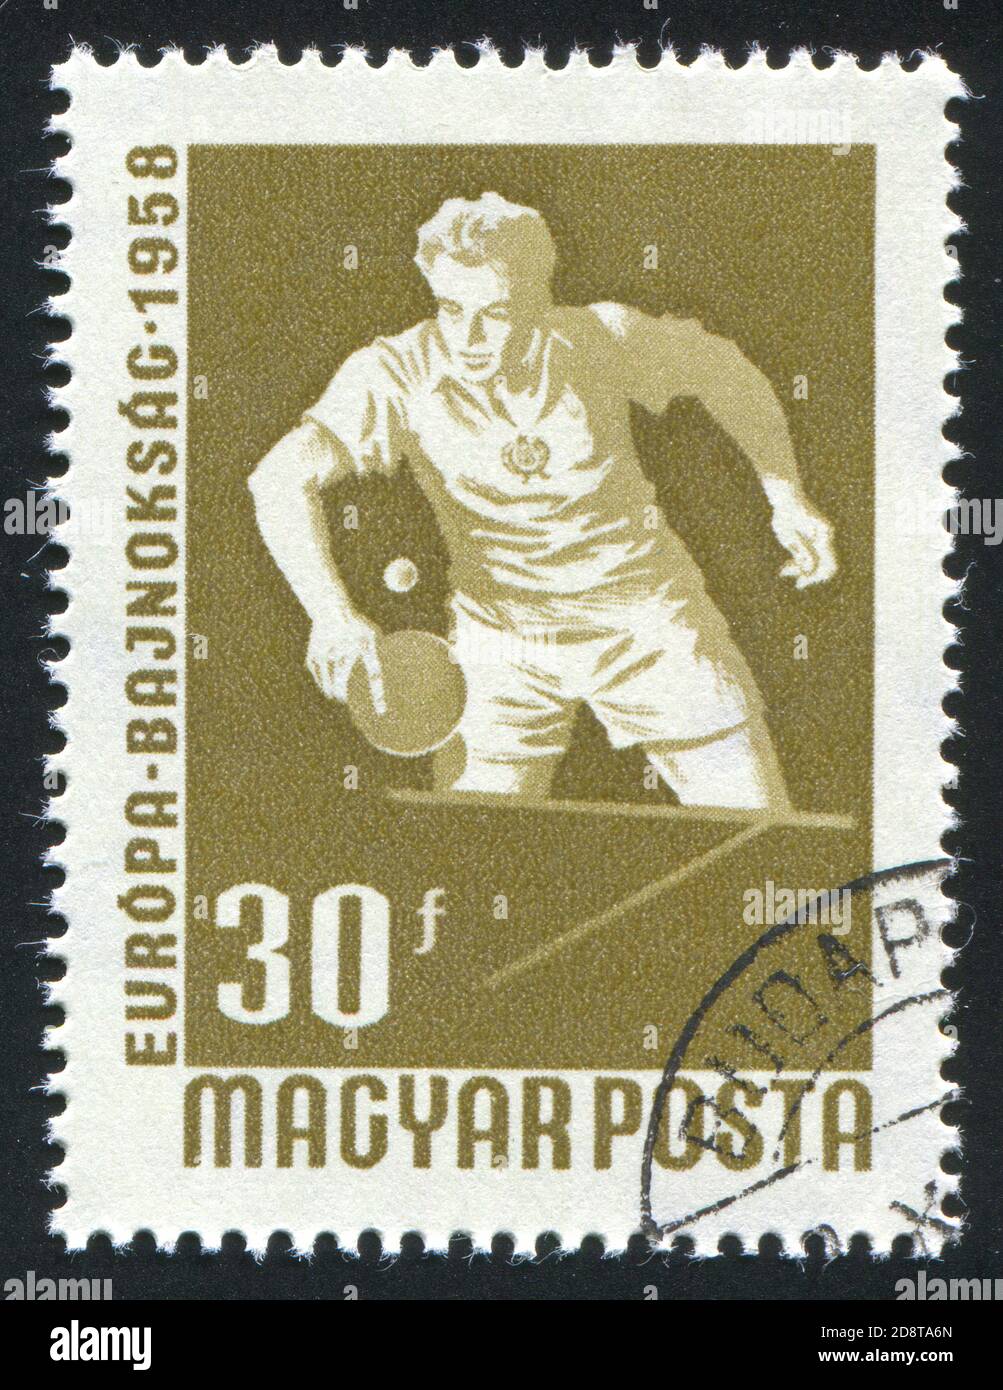 UNGARN- UM 1958: Stempel gedruckt von Ungarn, zeigt Tischtennisspieler, um 1958 Stockfoto